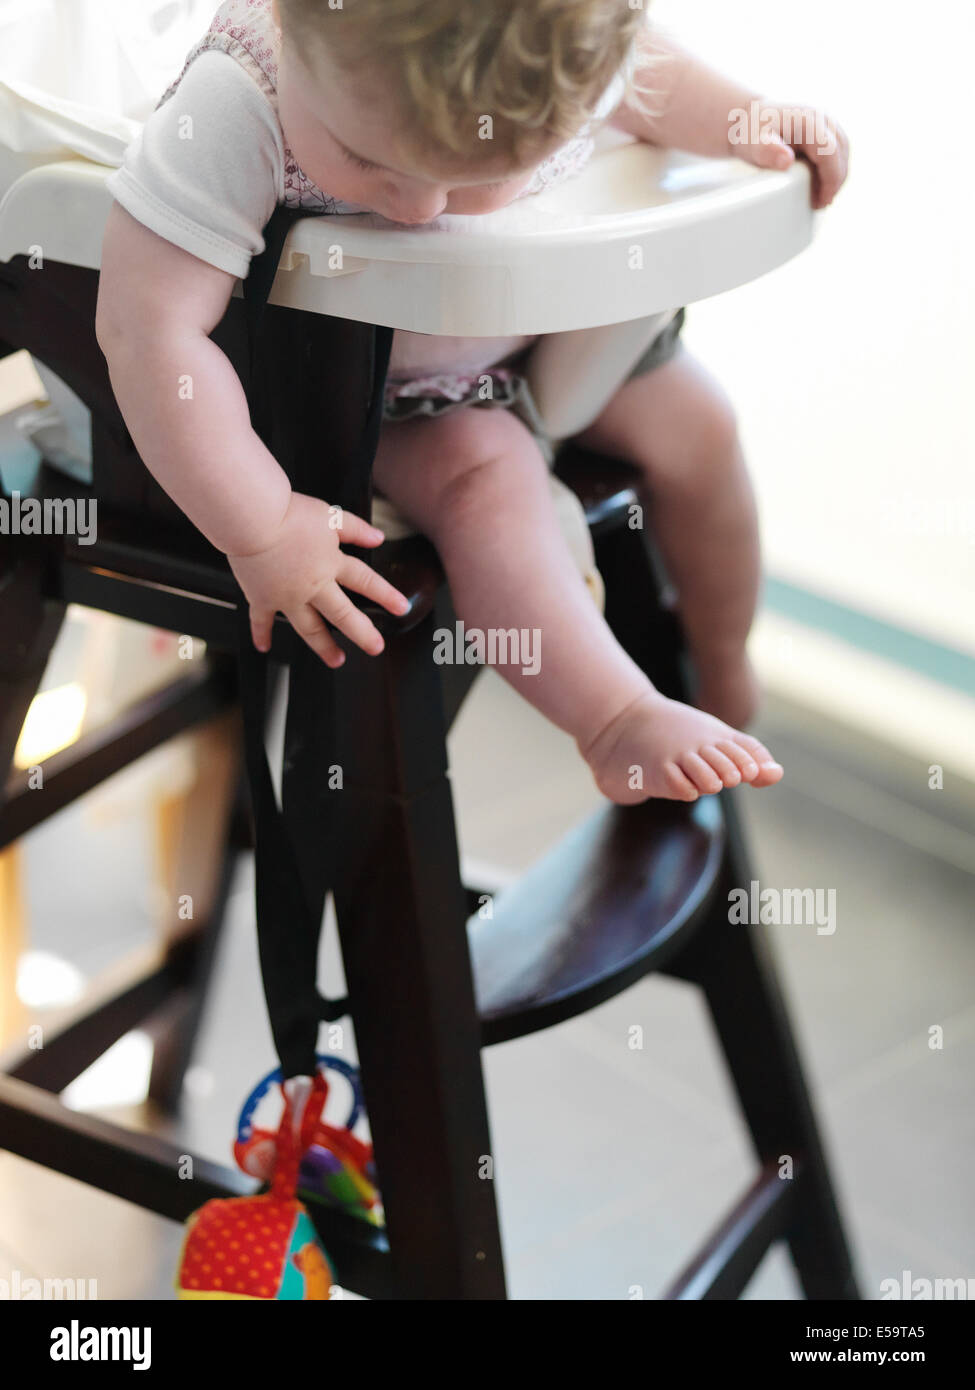 Baby girl in sedia alta per raggiungere il giocattolo Foto Stock